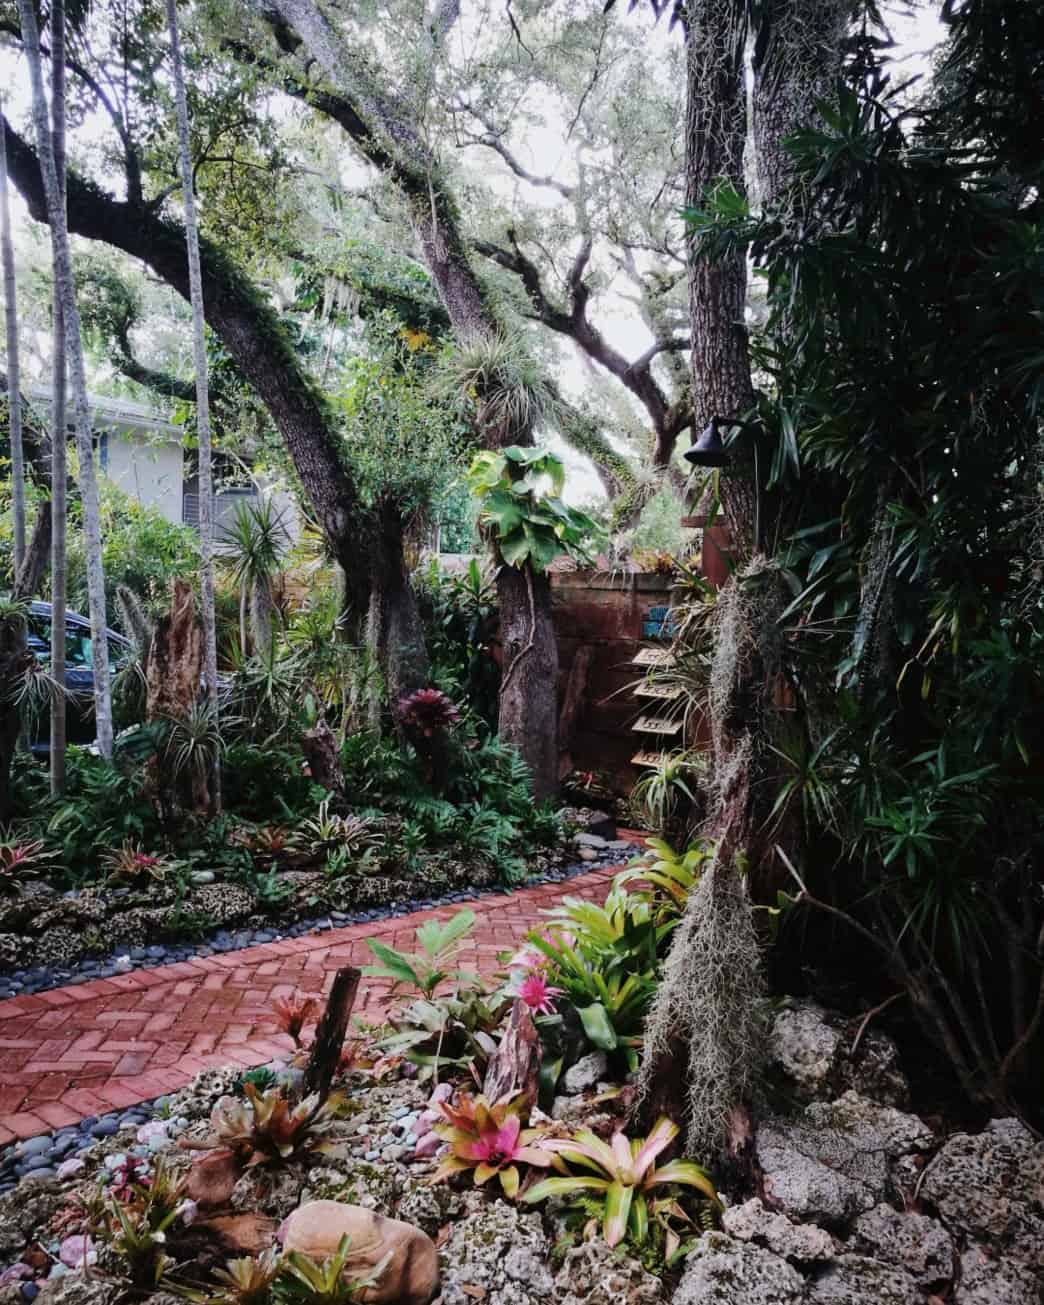 📍Coconut Grove, Miami
Toujours dans le quartier de Coconut Grove, j'ai pris cette photo juste parce que j'adore cette végétation. 
Une petite jungle dans la ville !
Et contrairement à ce qu'on pourrait penser Miami a beau être une grande ville avec toutes les constructions qui vont avec... il est facile de trouver des îlots de verdure comme celui-ci.
Et c'est doute l'une des raisons qui fait que je me sens si à l'aise ici.

#coconutgrove #coconutgrovemiami #greendistrict #miami #miamiflorida #spanishmoss #wildlife #wildlifephotography #etatsunis #america #floridastate #voyages #voyagevoyage